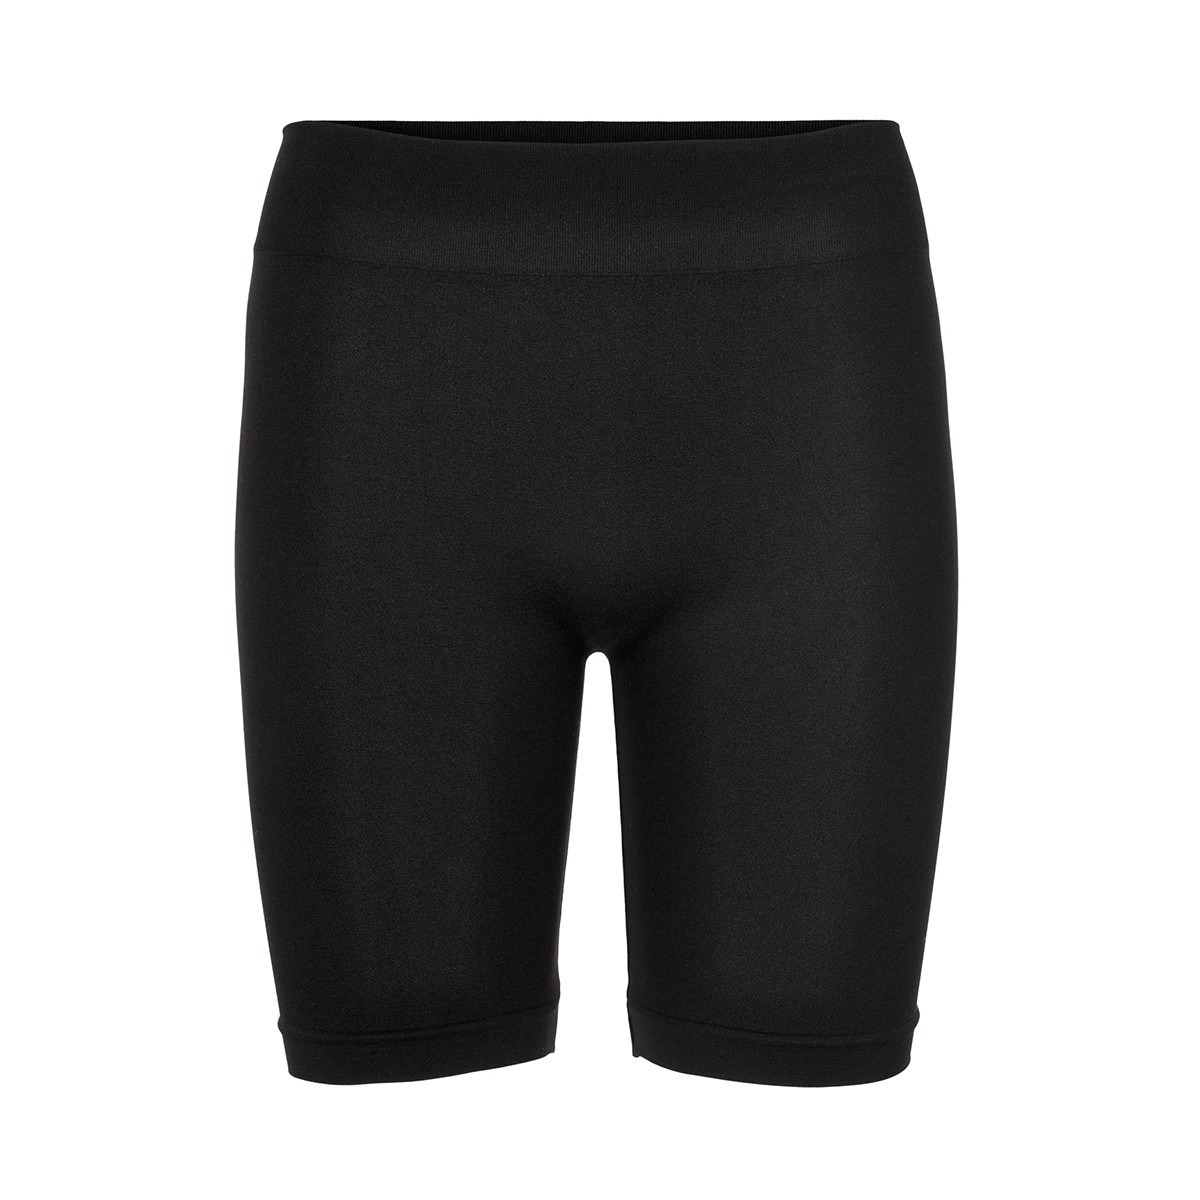 6: Decoy Seamless Shorts, Farve: Sort, Størrelse: S/M, Dame